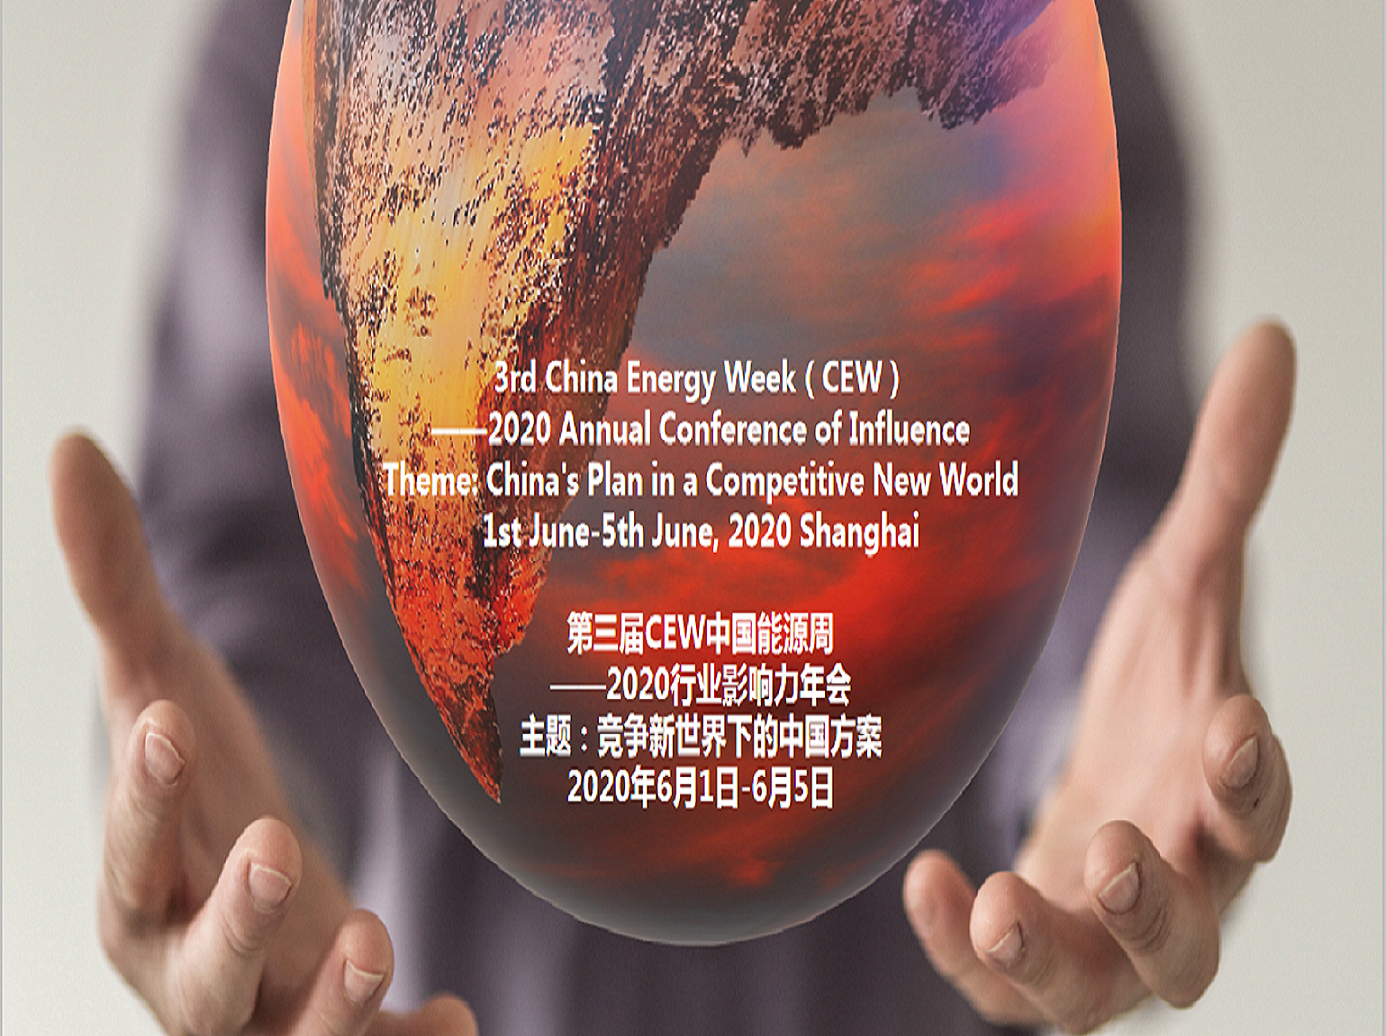 第三届中国能源周——2020行业影响力年会